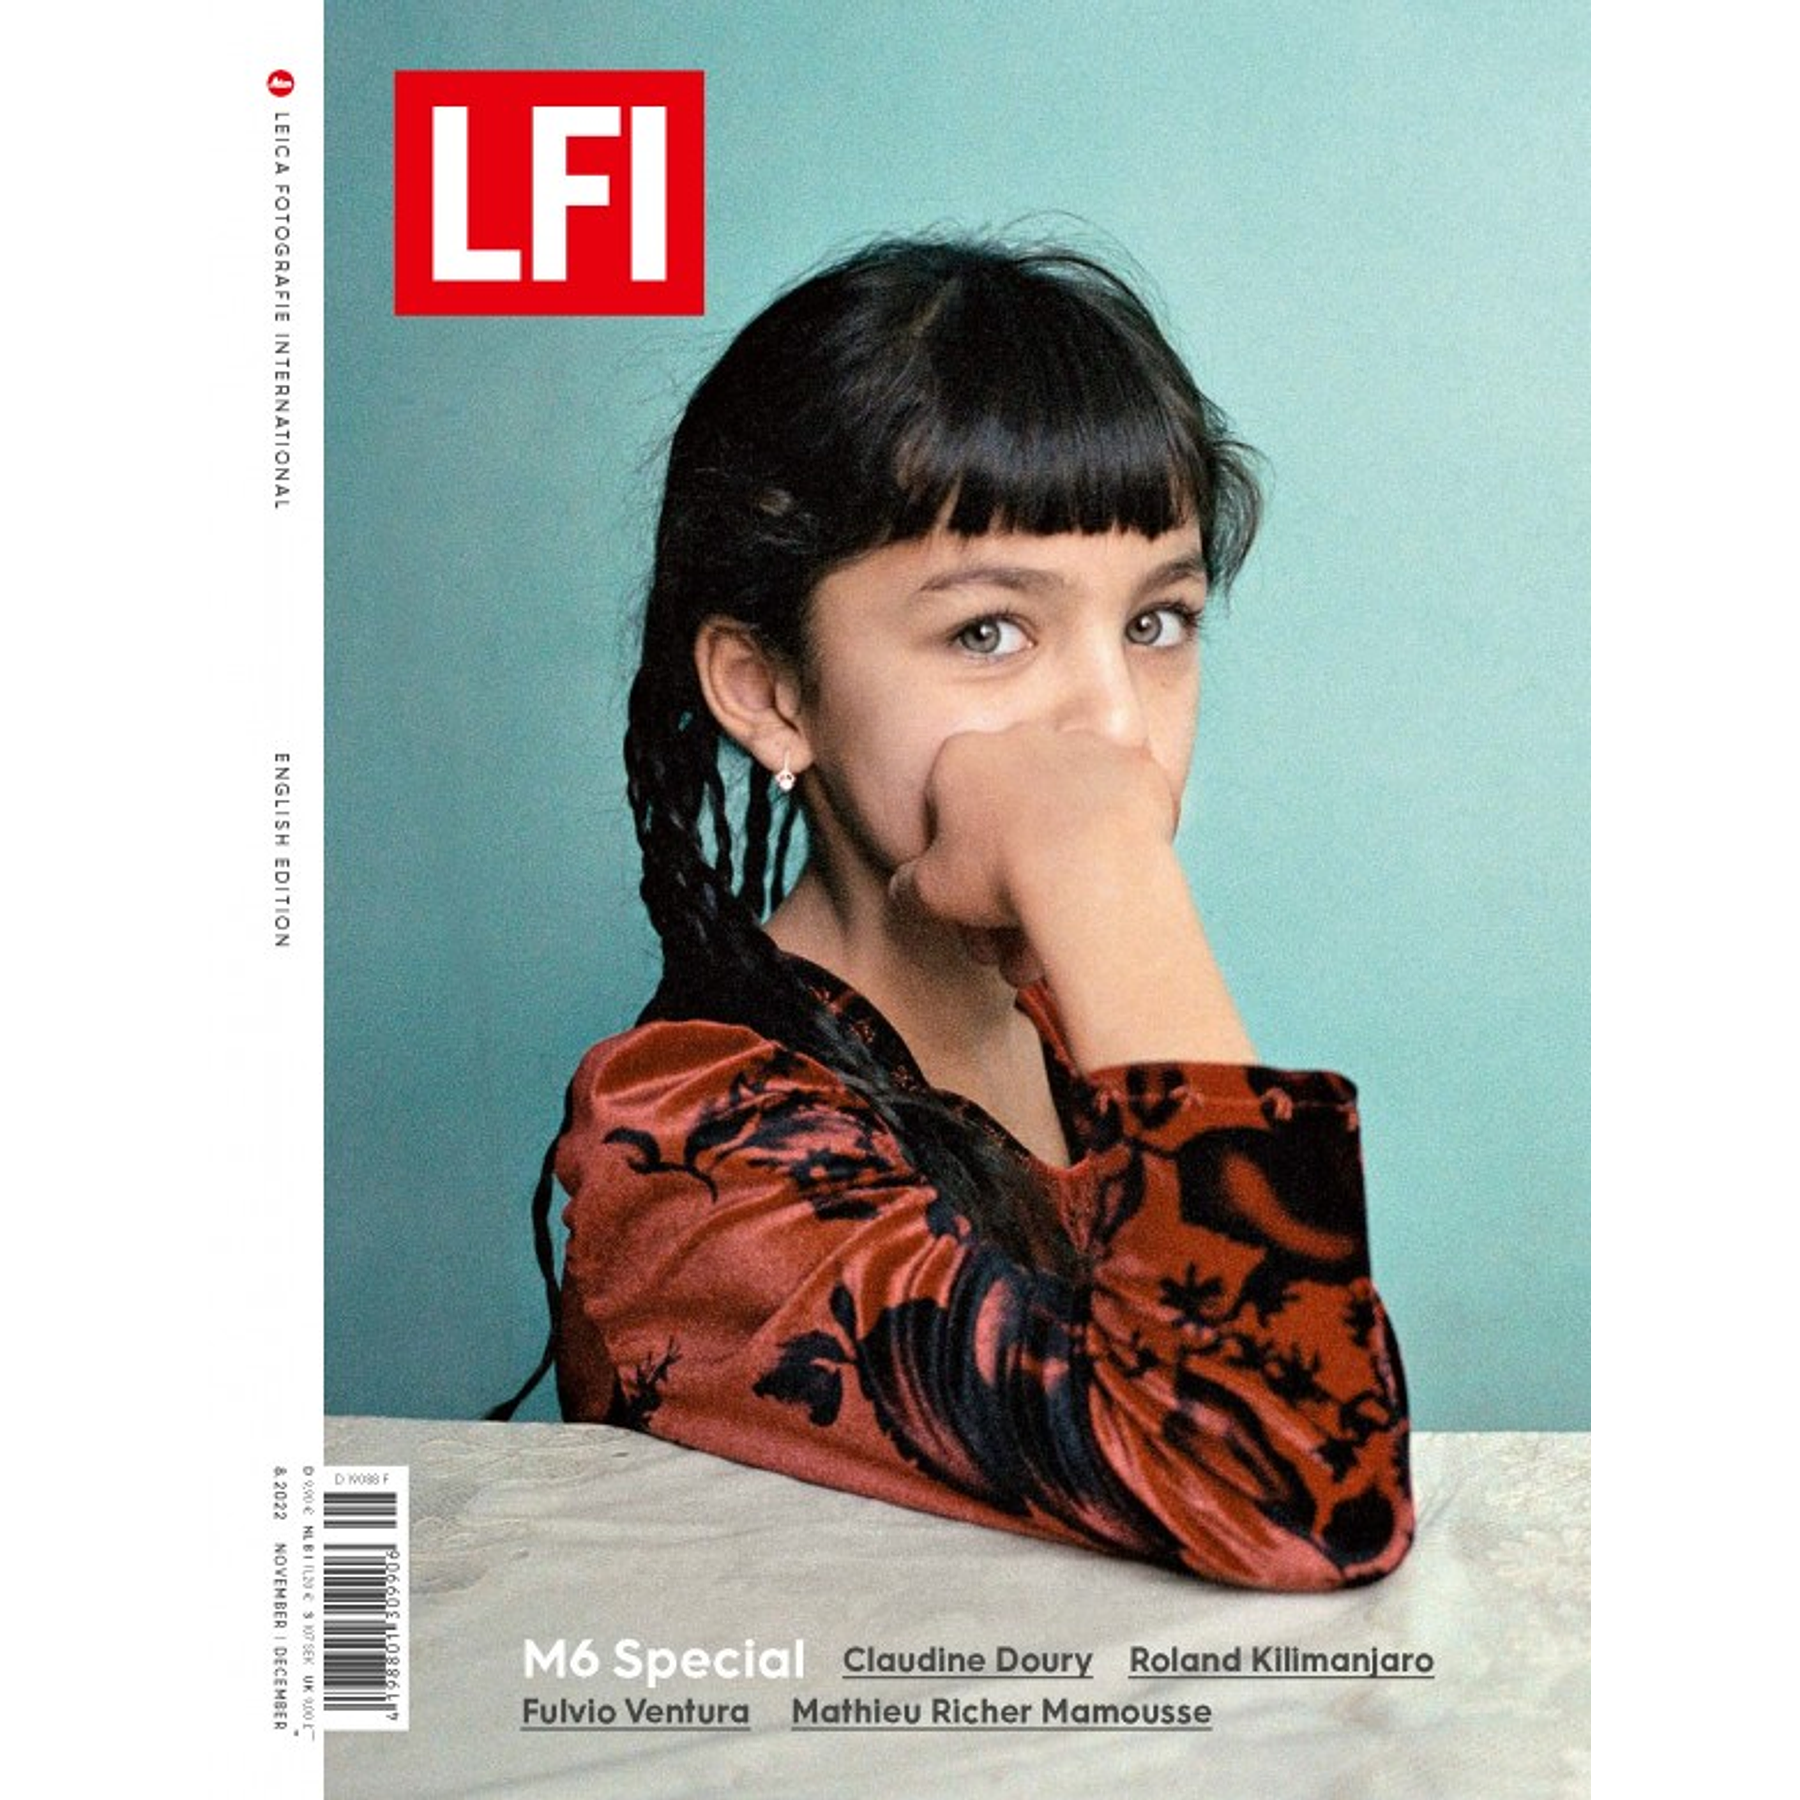 Revista Leica LFI - 8/22